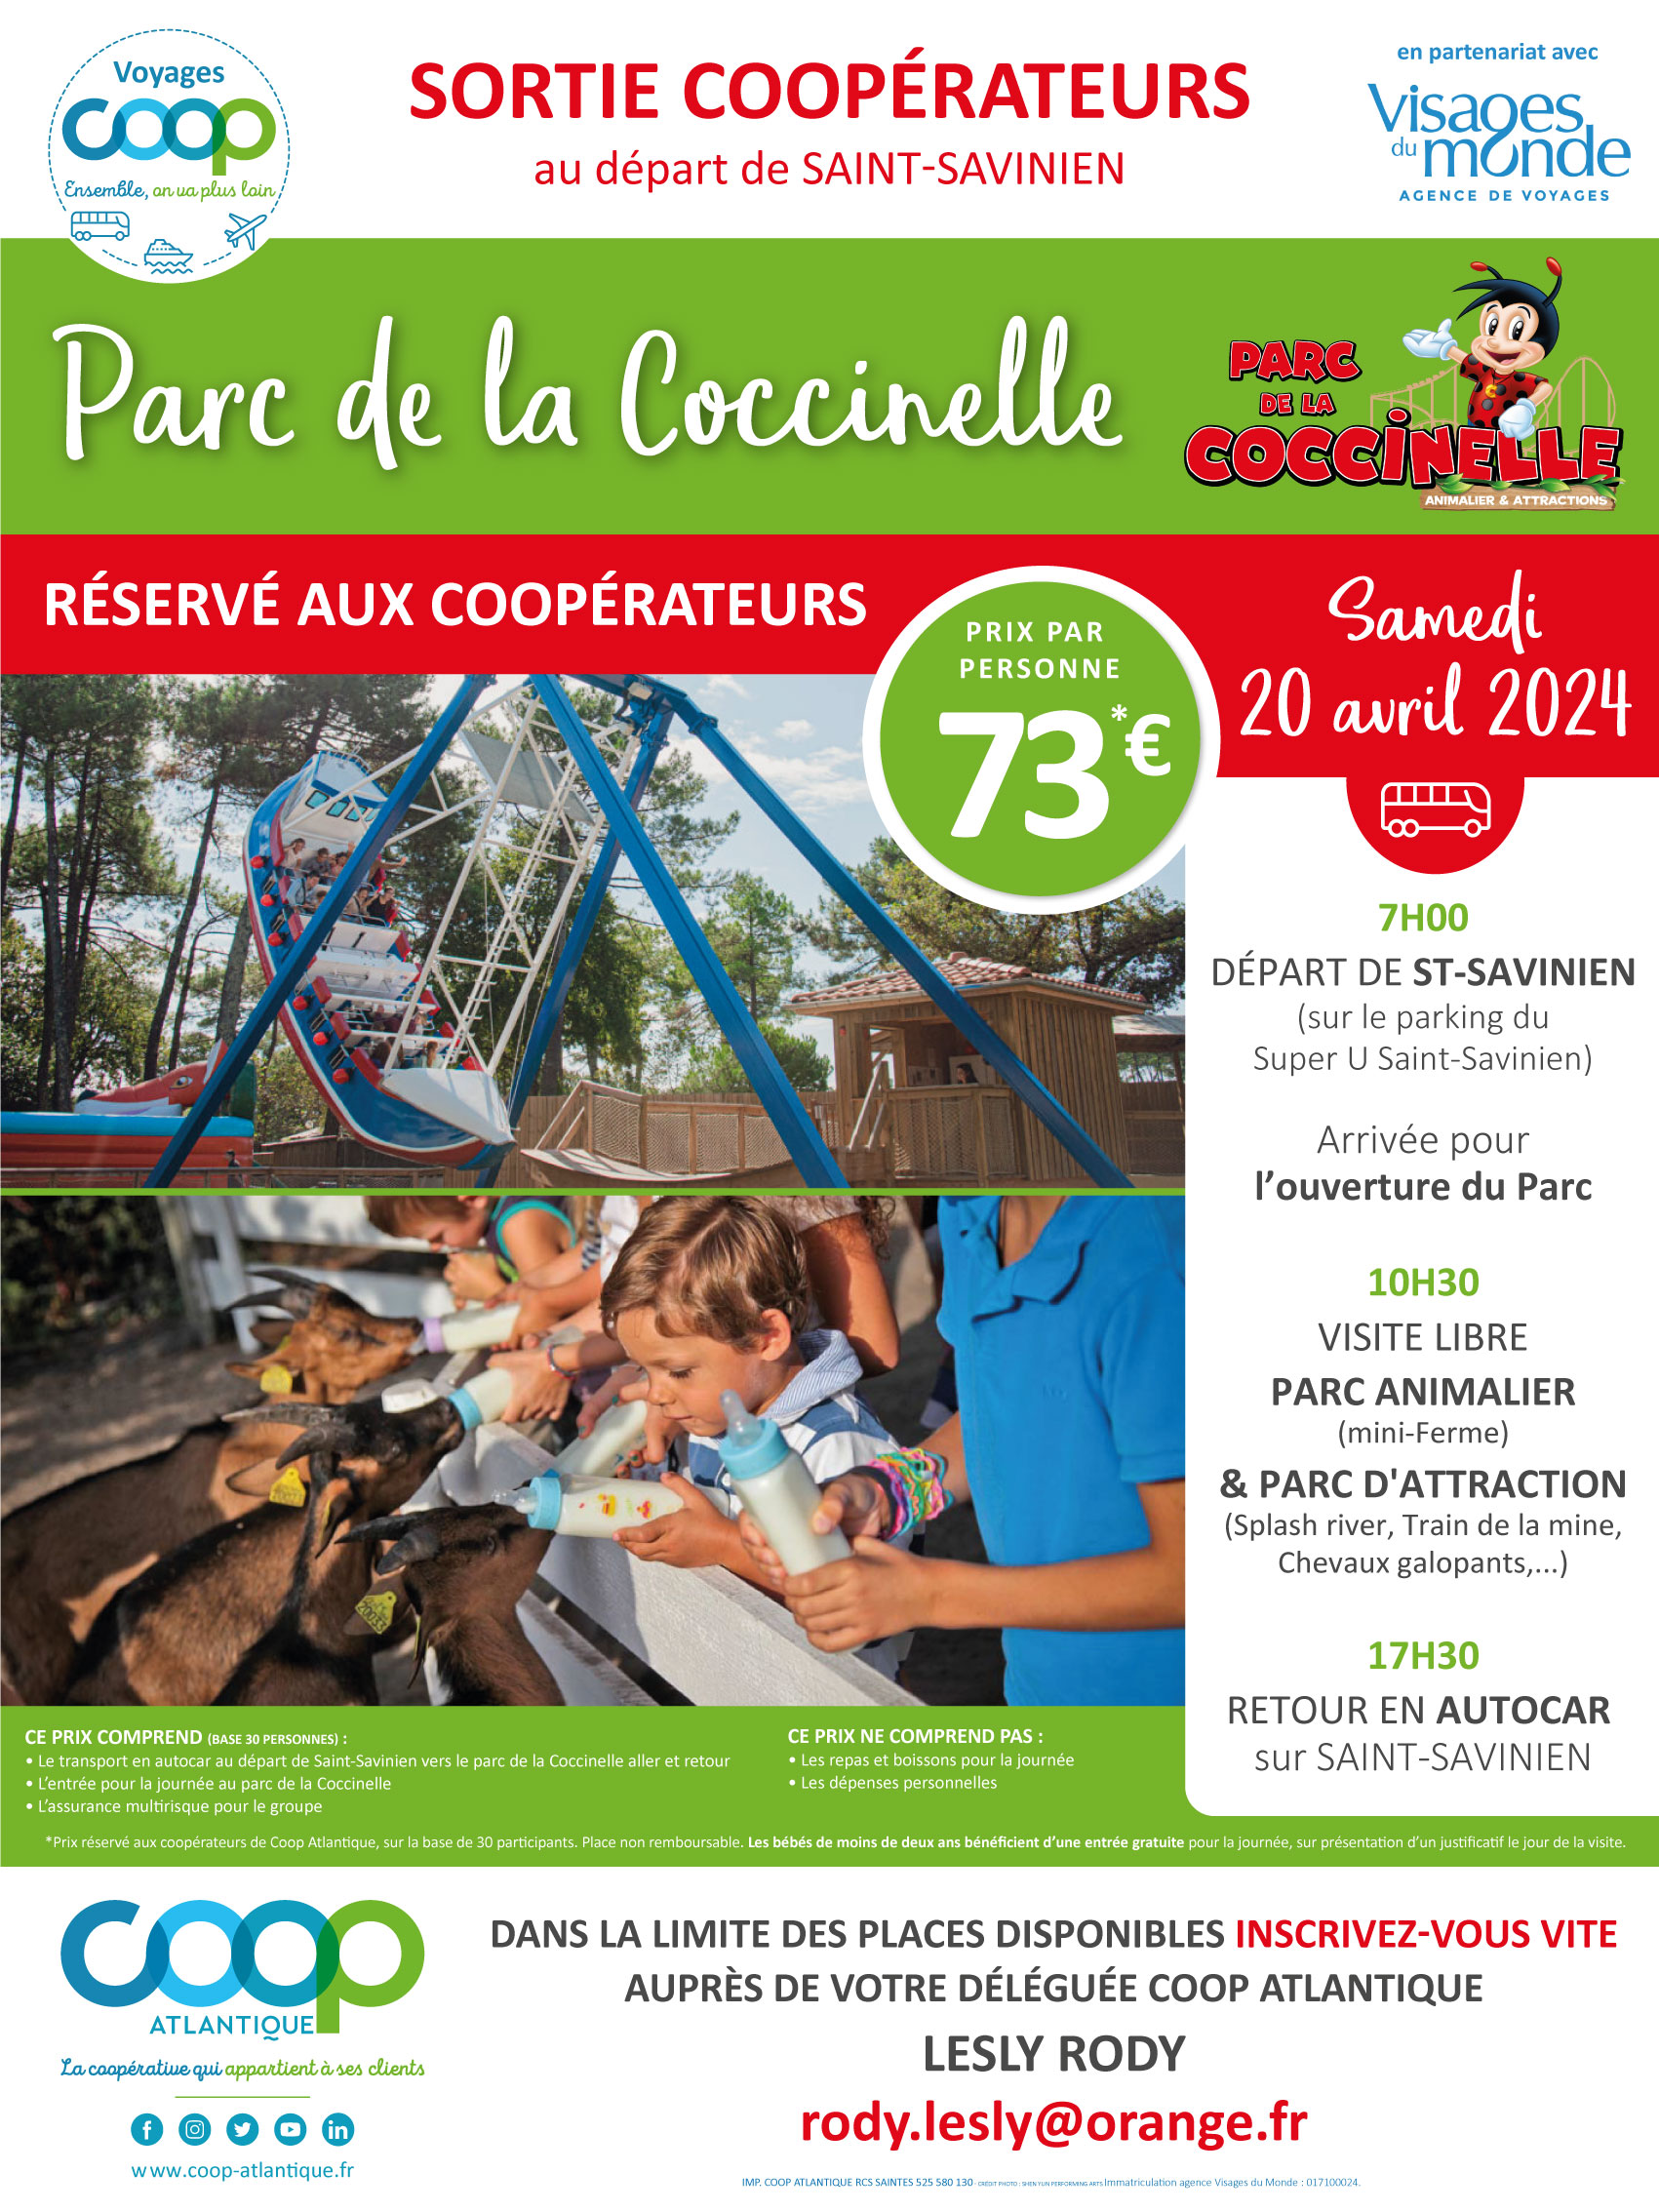 Journée au Parc de la Coccinelle - Sortie Coop au départ de Saint-Savinien